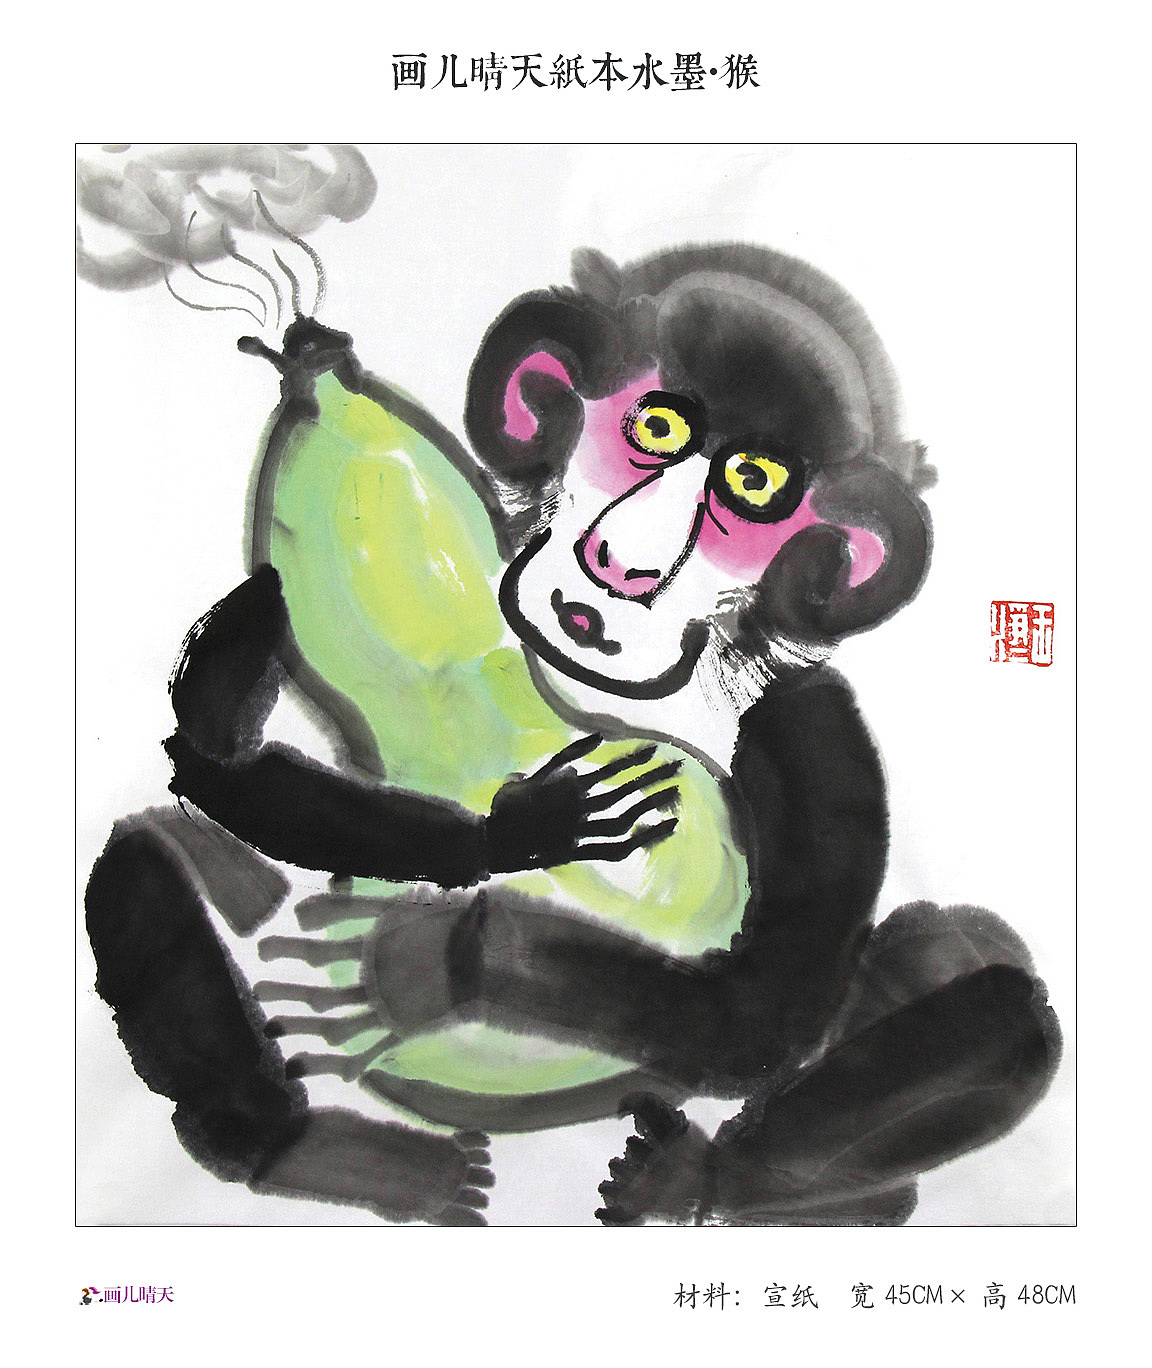 超萌小猴子简笔画画法图片步骤（儿童动物简笔画大全） - 有点网 - 好手艺